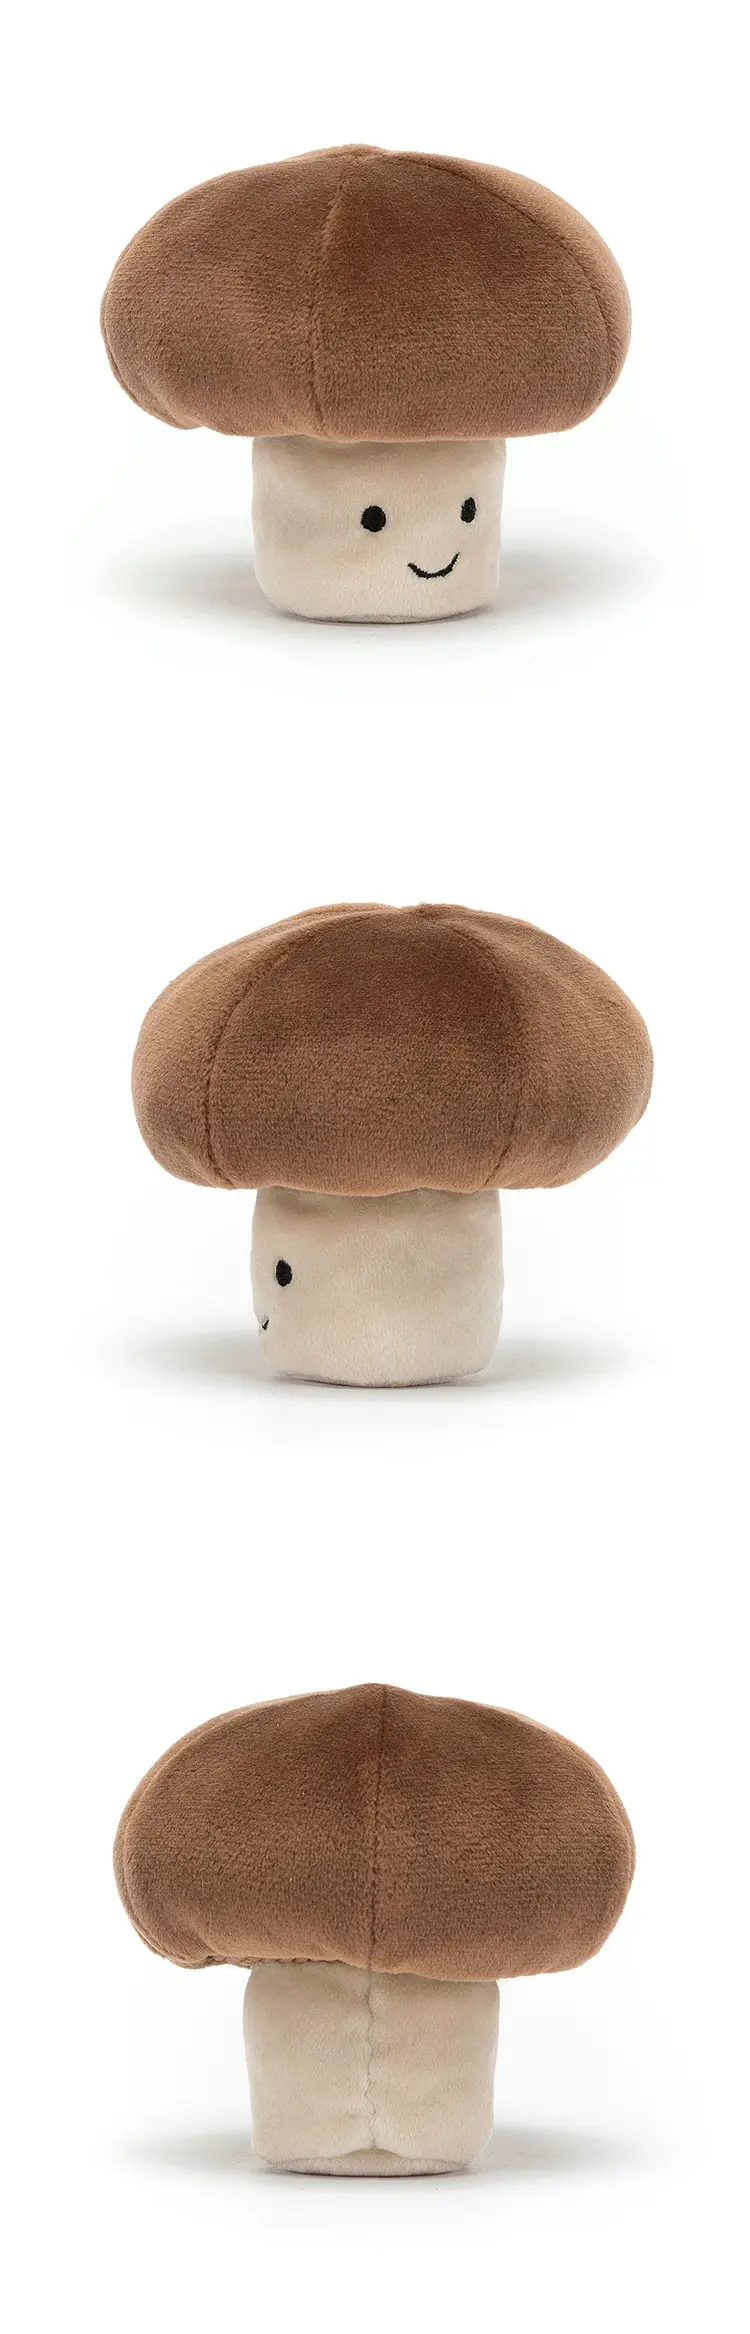  JellyCat Vegetable Mushroom 蘑菇公仔